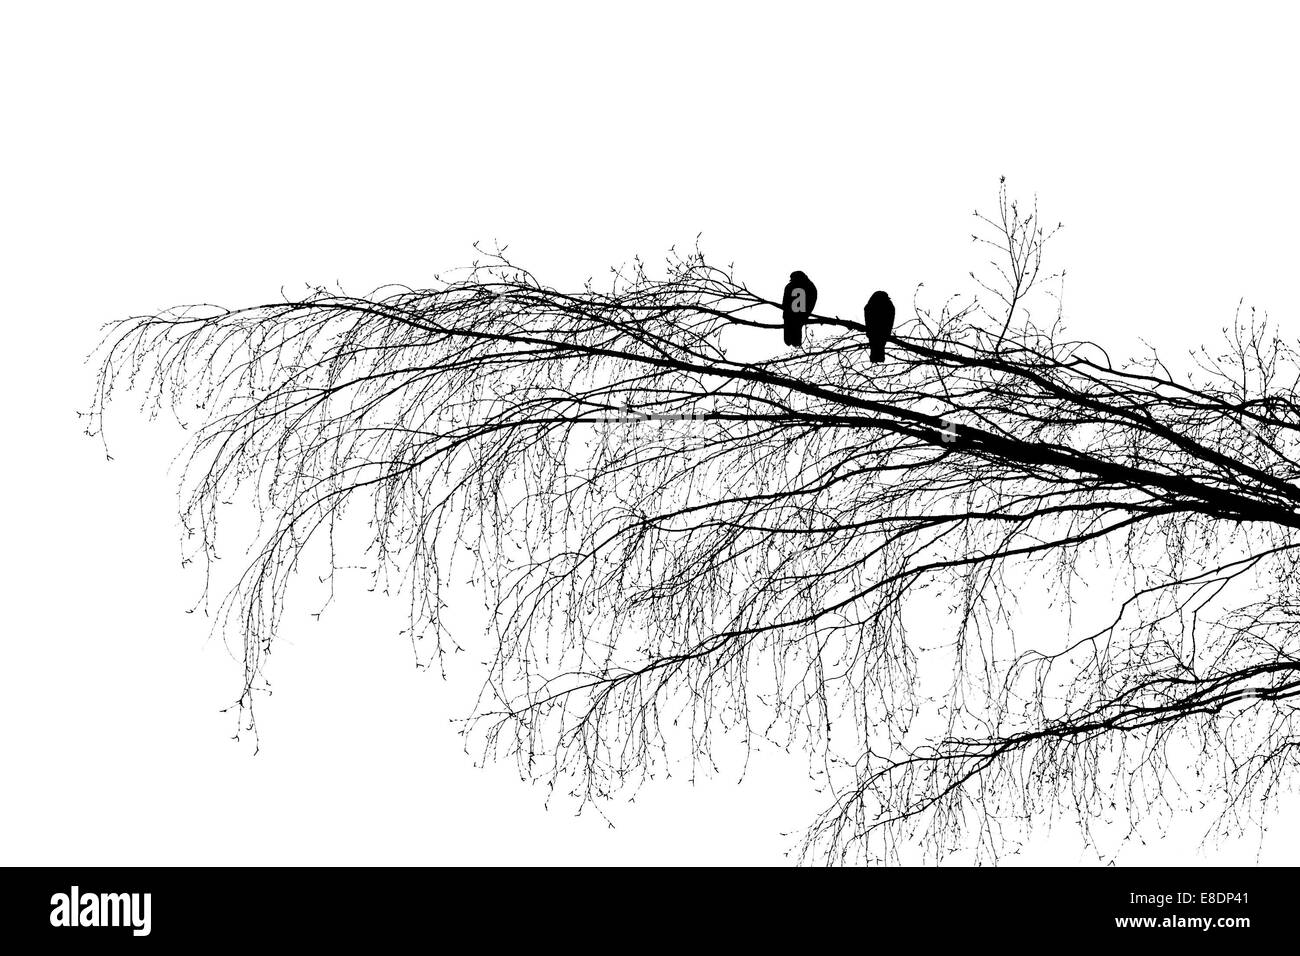 Dos palomas de madera en la rama de un árbol, mirando en direcciones opuestas. Silueta de la fotografía en blanco y negro Foto de stock